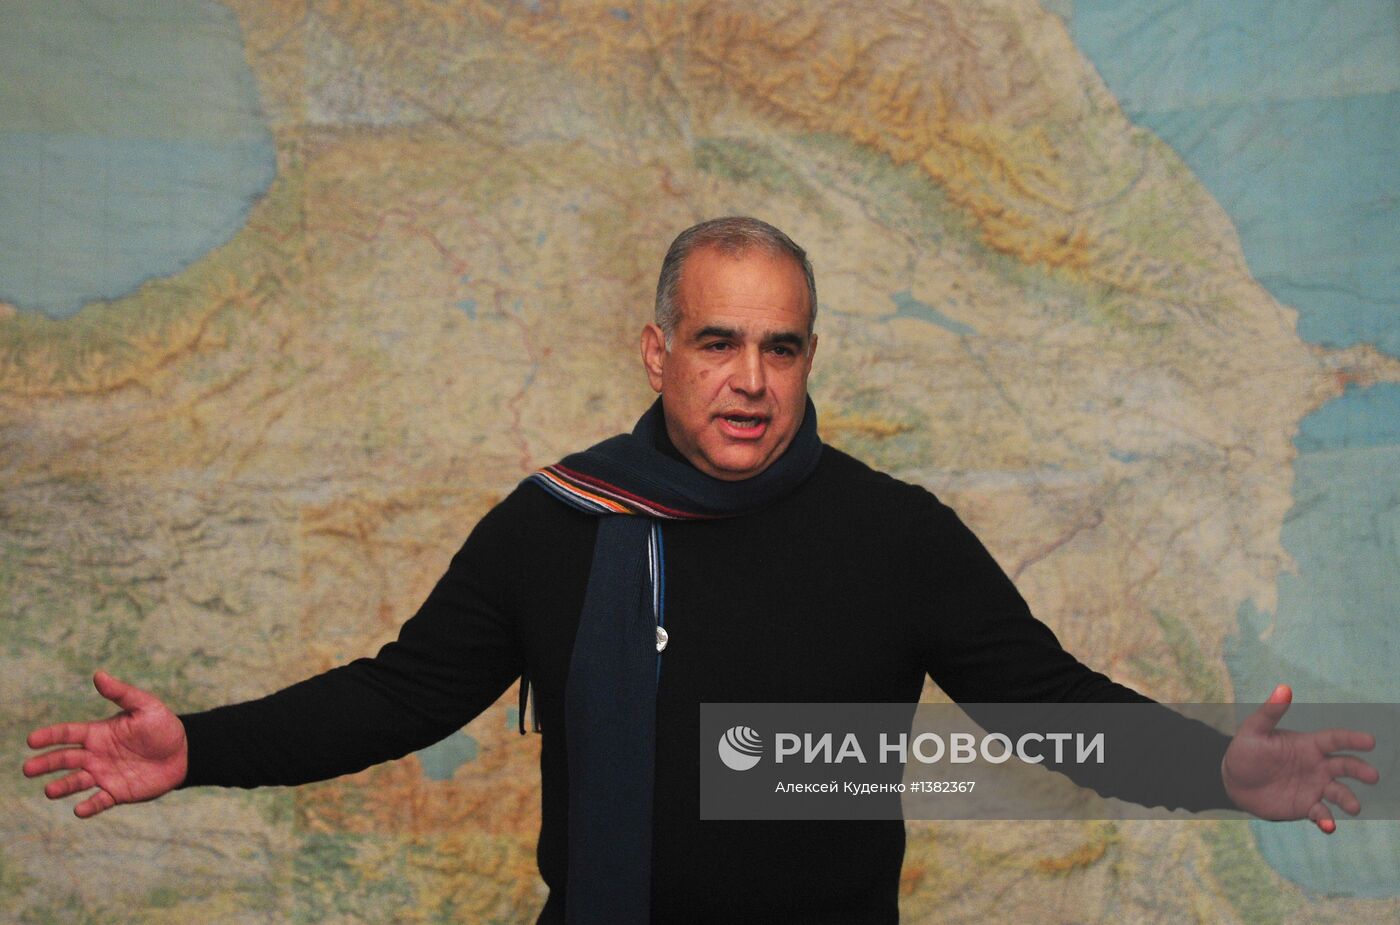 Пресс-конференция кандидата в президенты Армении Р.Ованнисяна